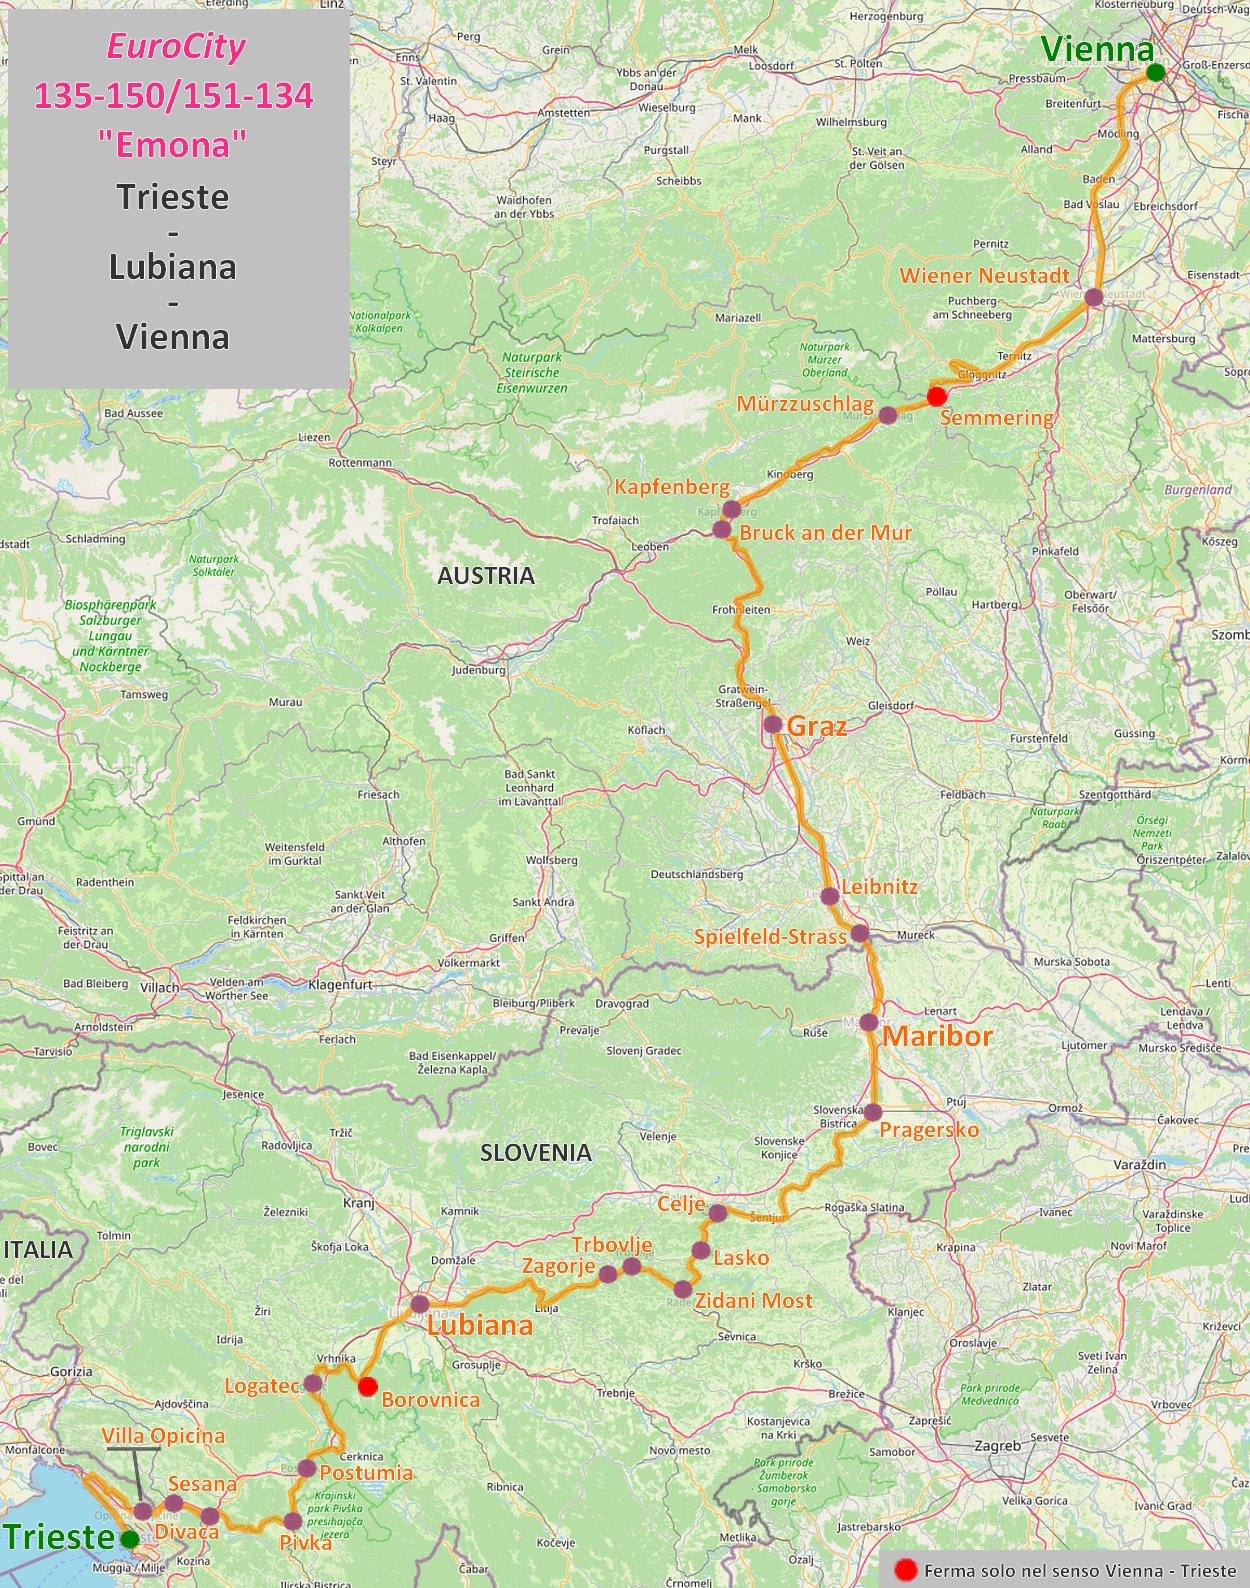 Mappa EuroCity "Emona" Trieste - Lubiana - Vienna